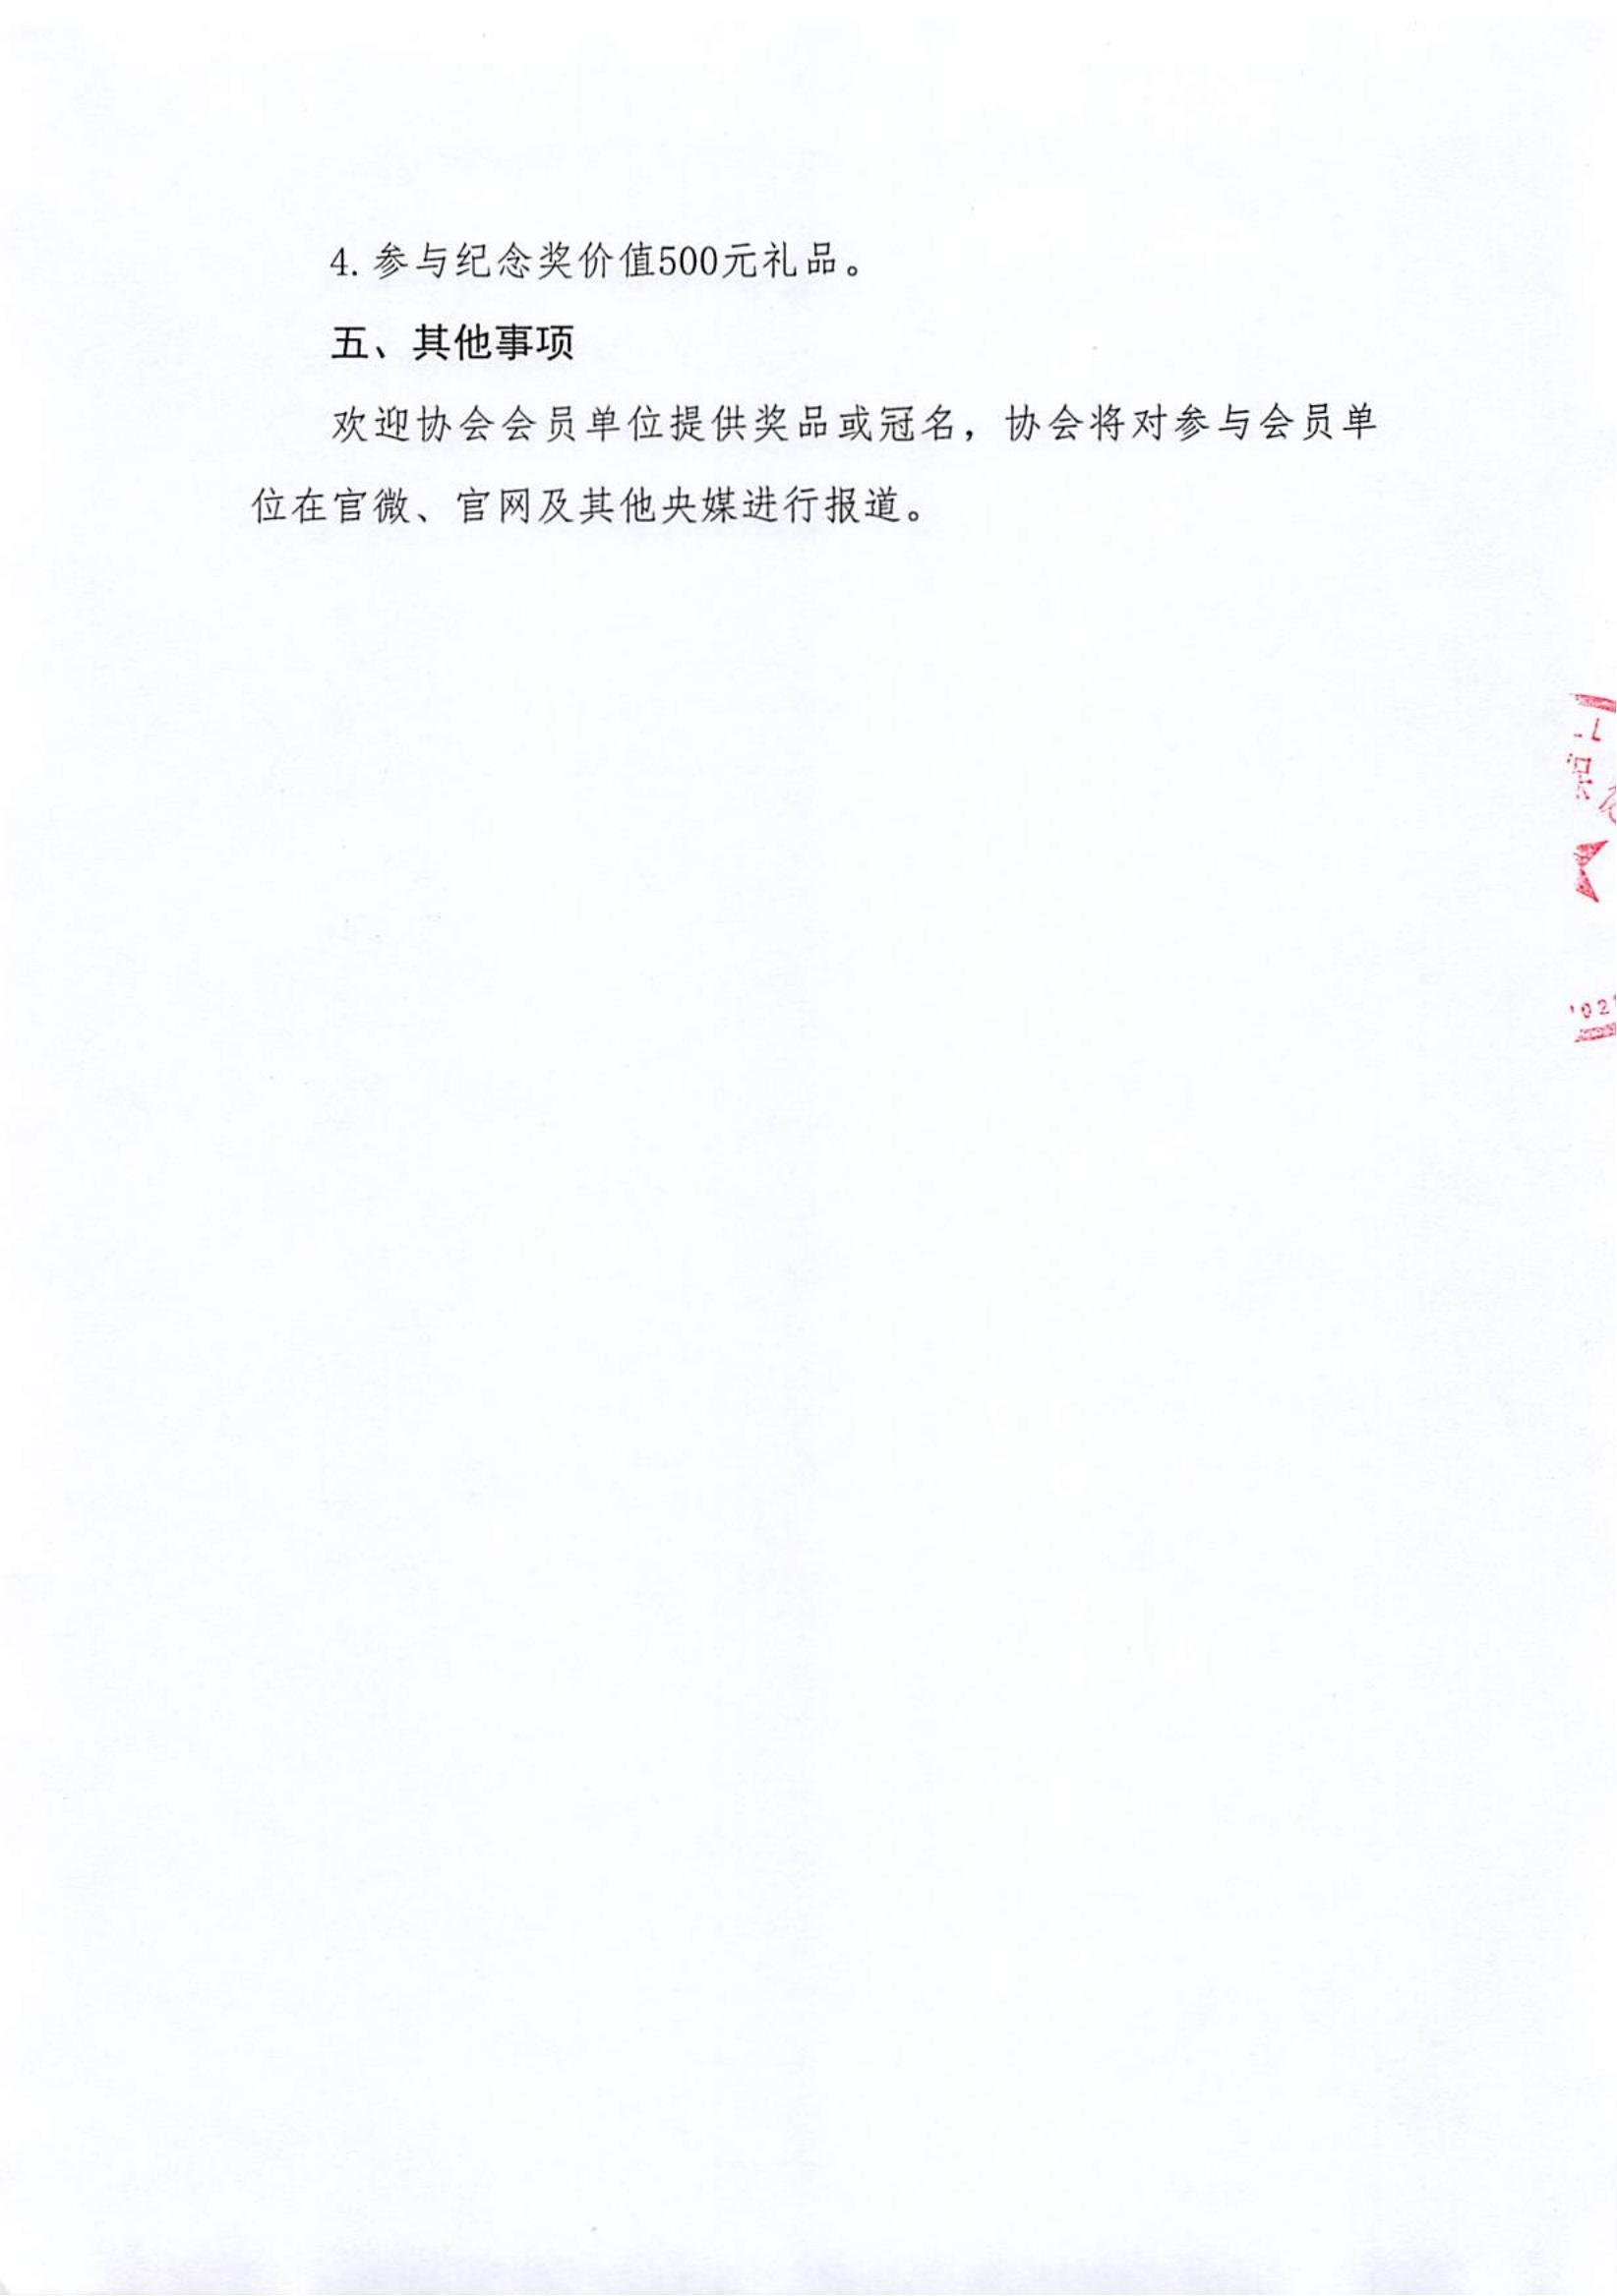 关于组织中国老年保健协会羽毛球比赛活动的通知_02.jpg